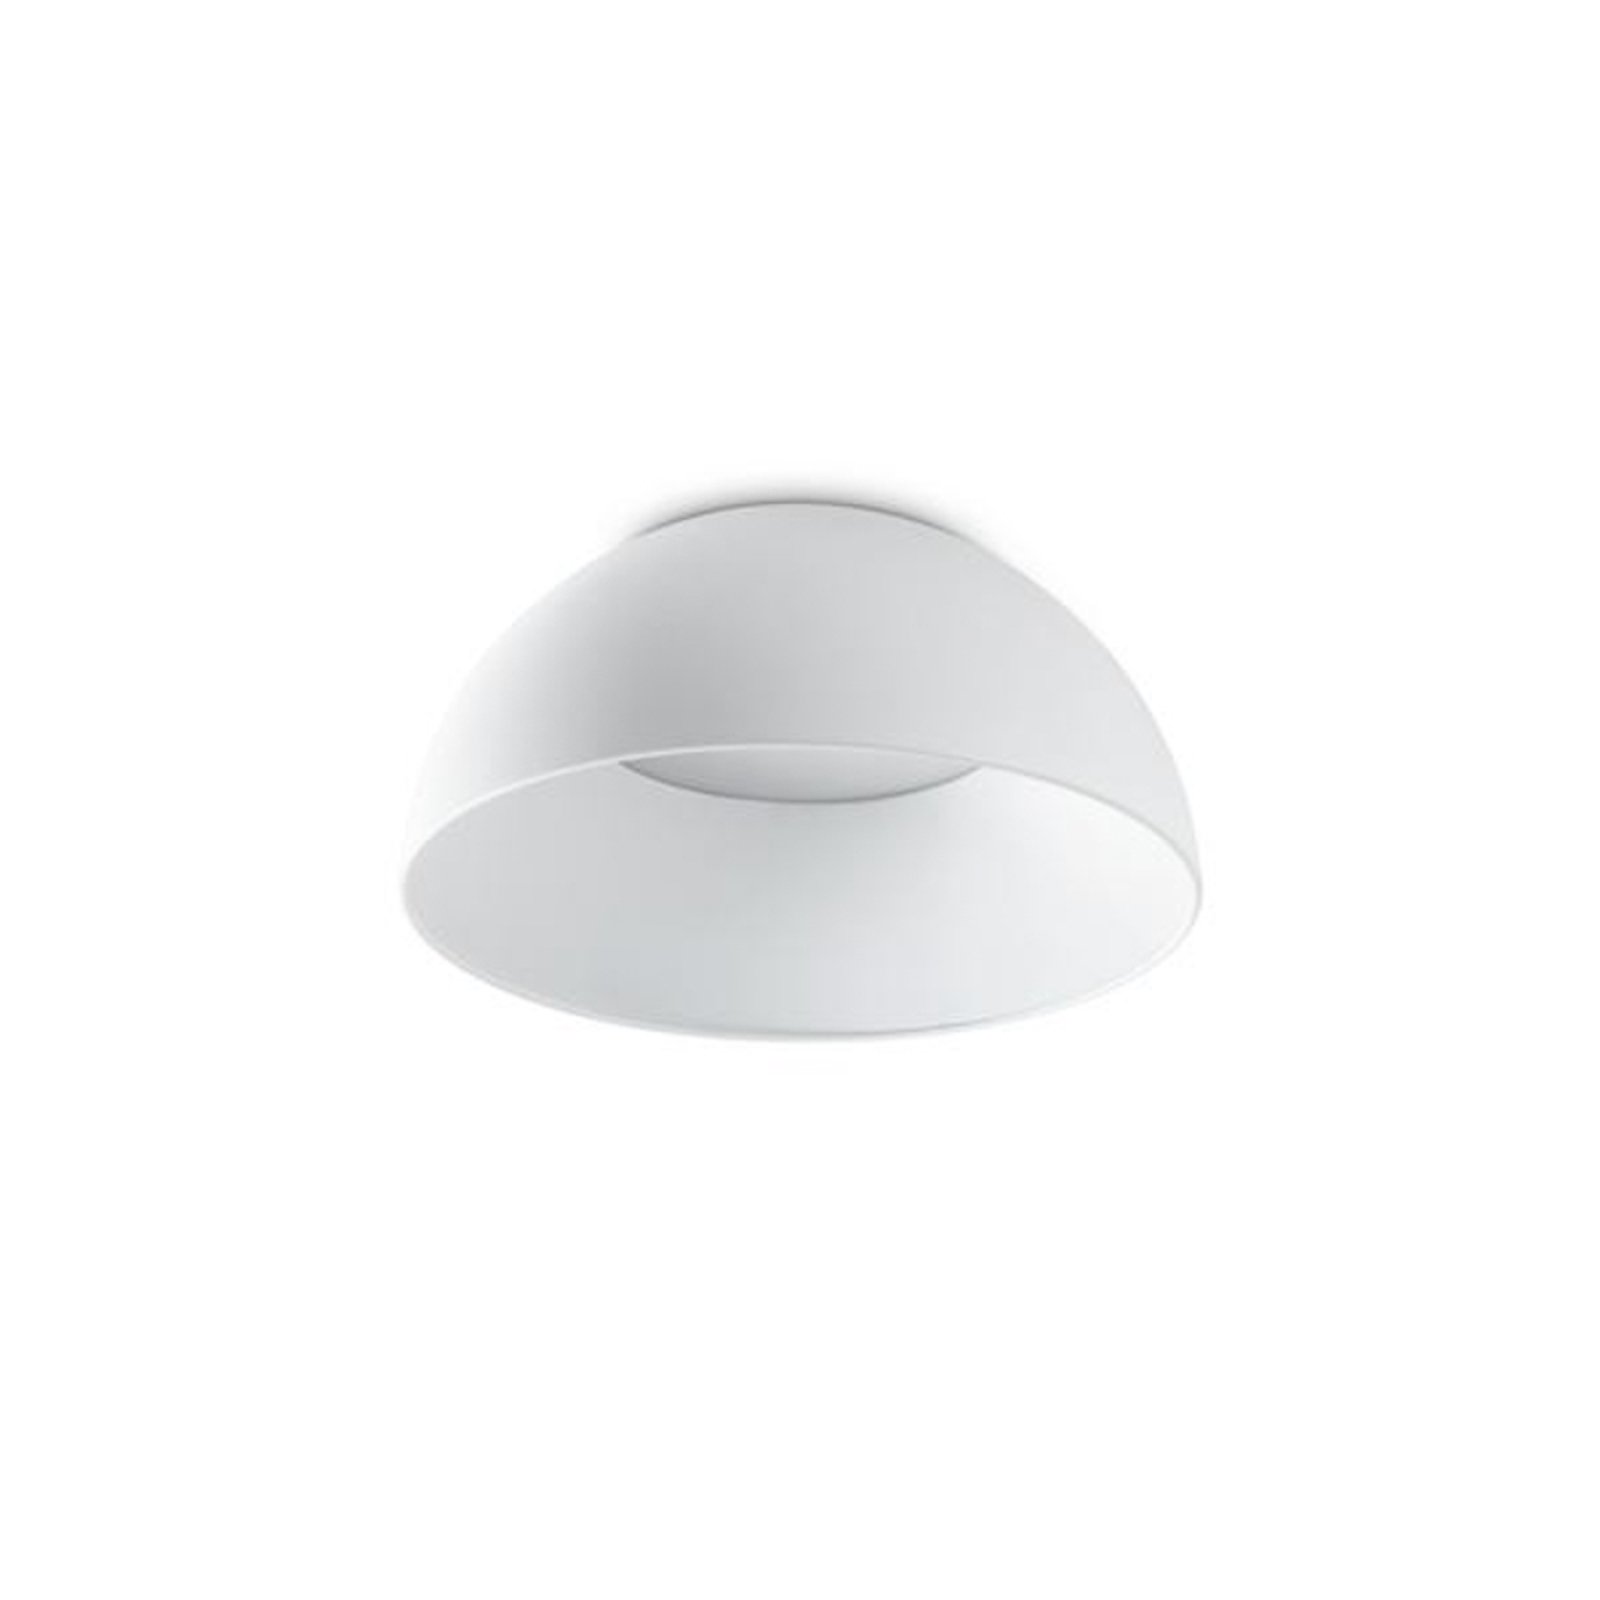 Ideal Lux LED-kattovalaisin Corolla-1, valkoinen, metalli, Ø 35 cm